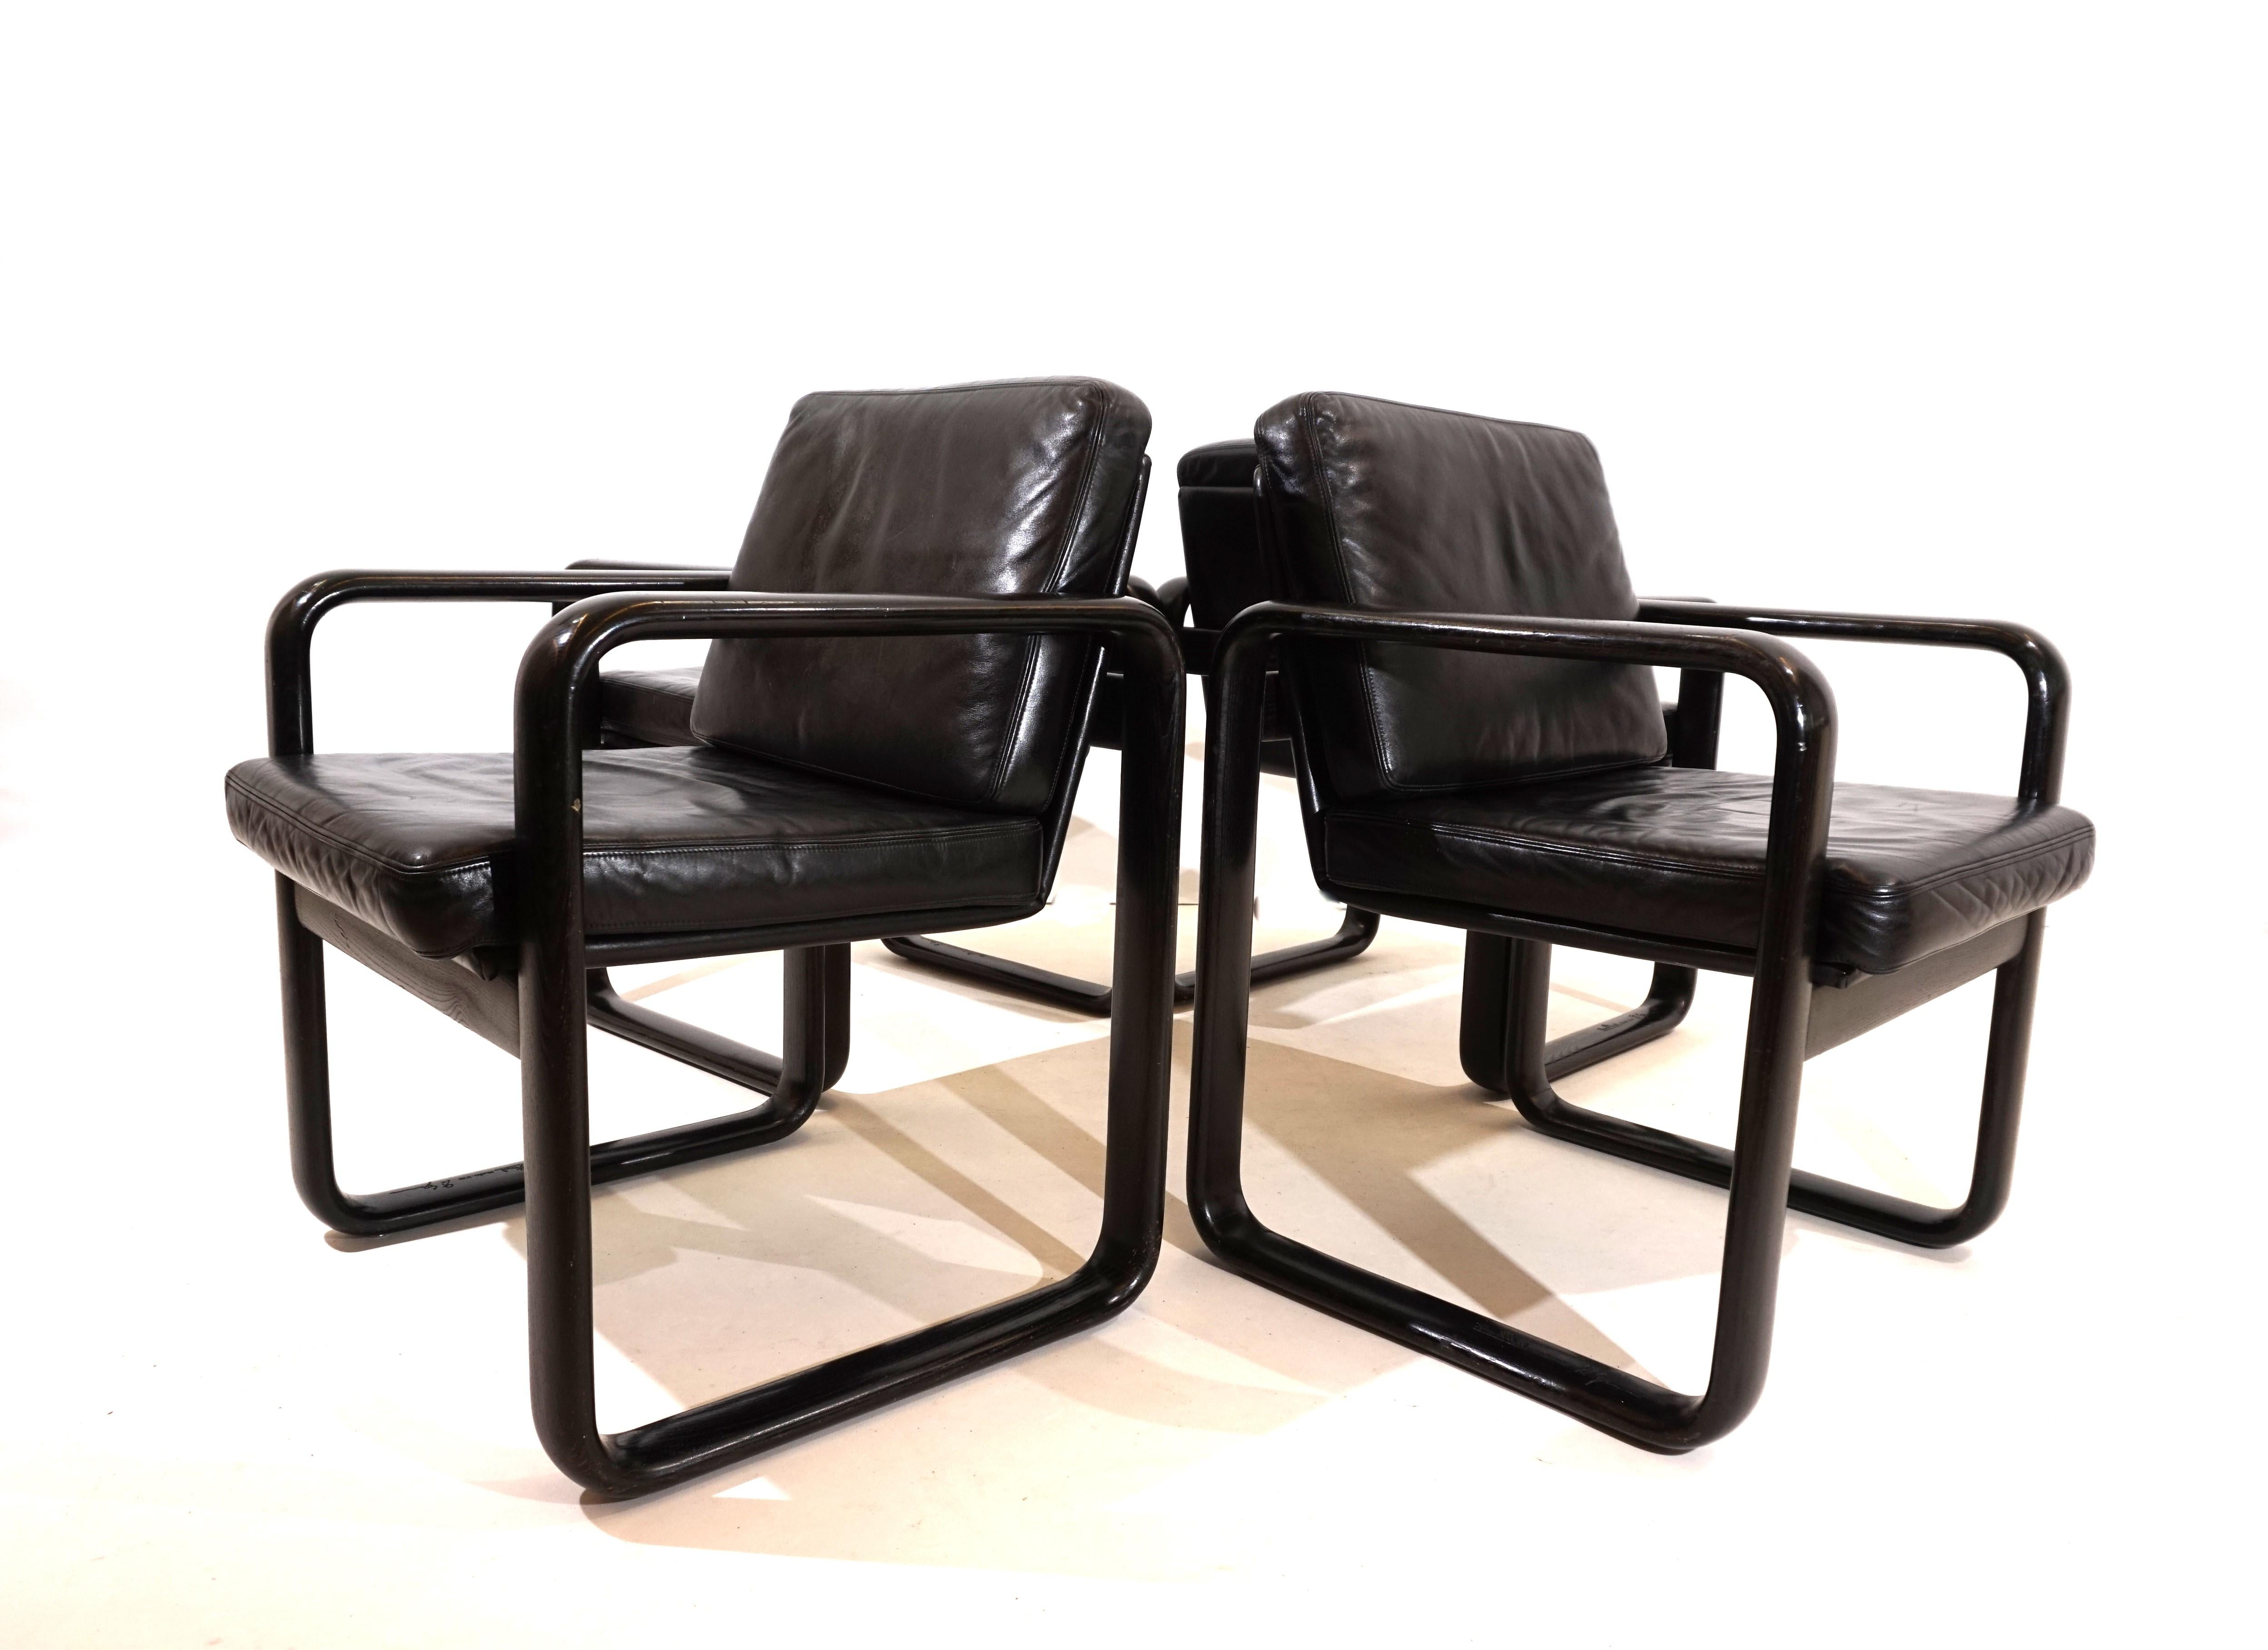 L'ensemble de 4 chaises Hombre est disponible dans la combinaison de couleurs la plus populaire, à savoir le cuir noir et le cadre en bois noir. Le cuir des fauteuils est en très bon état et le confort d'assise est impeccable. Les châssis cubistes